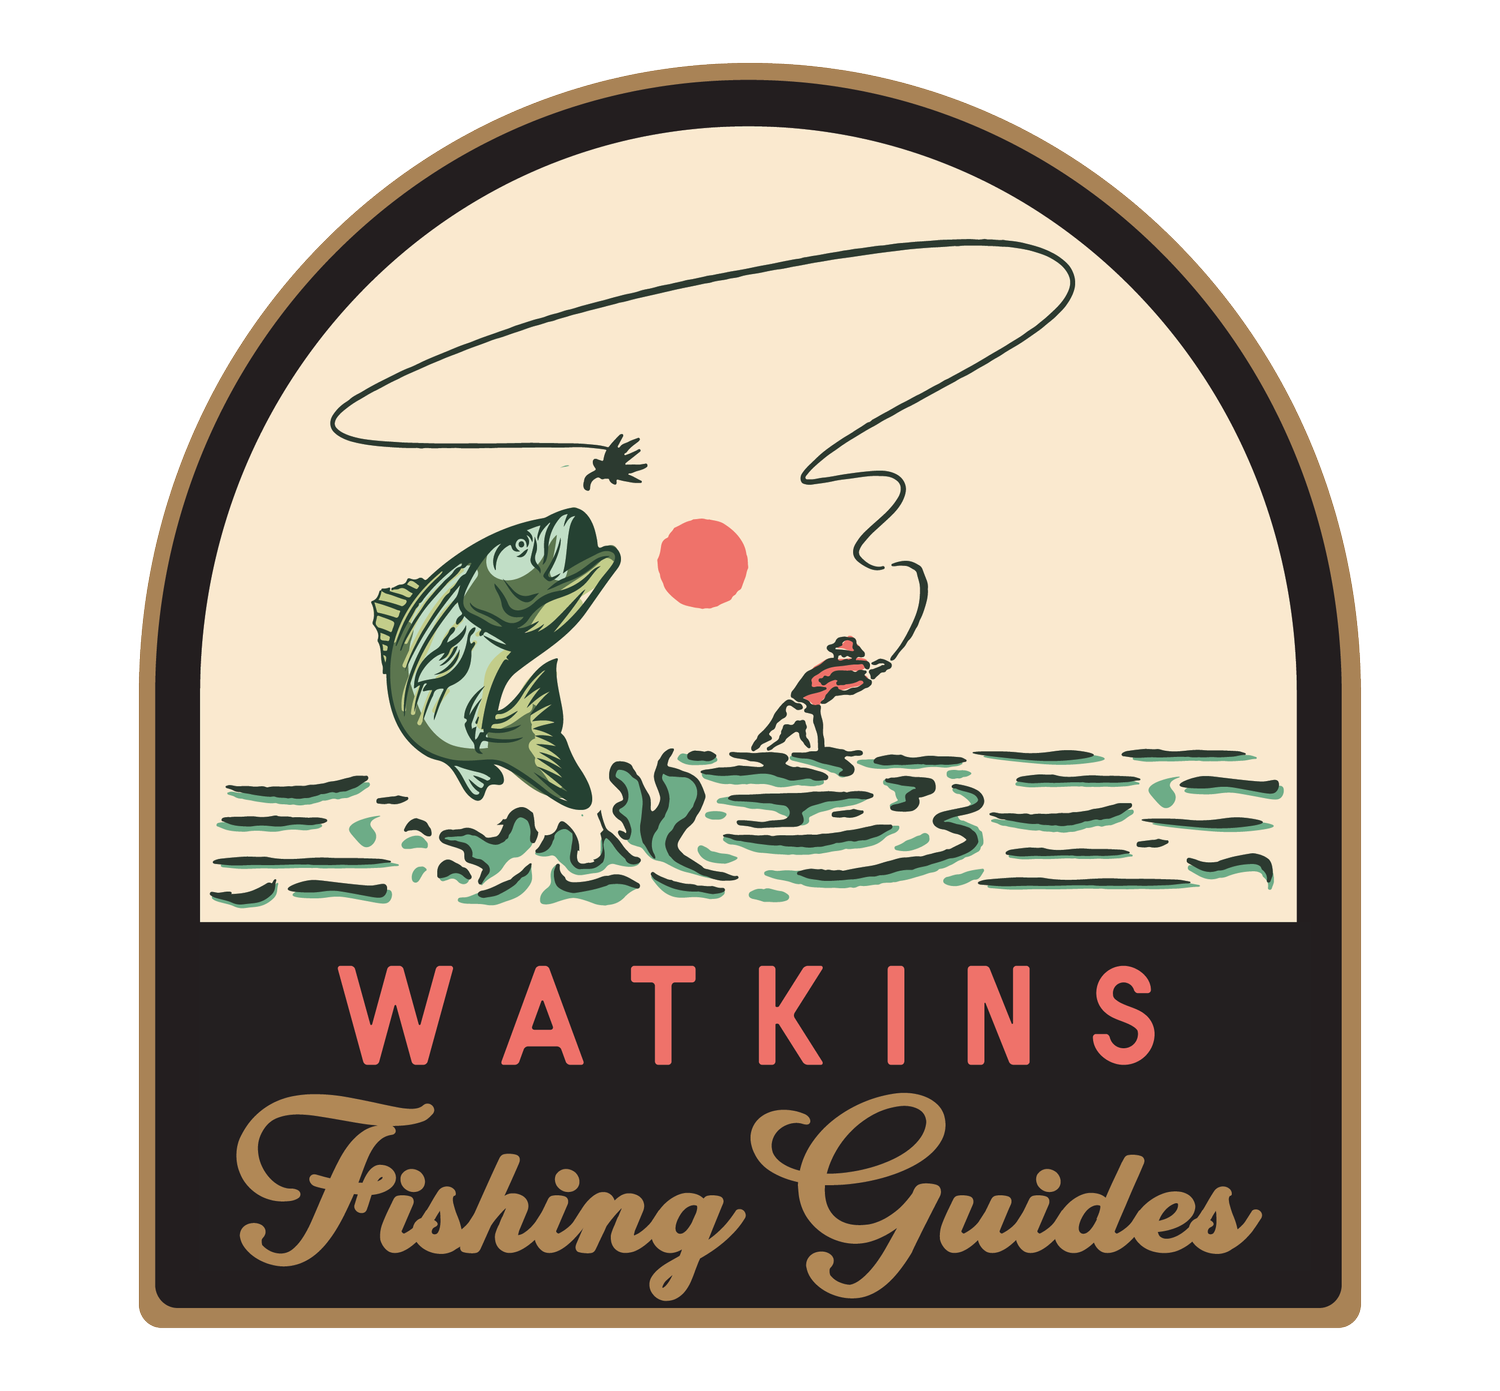 Watkins Fishing Guides